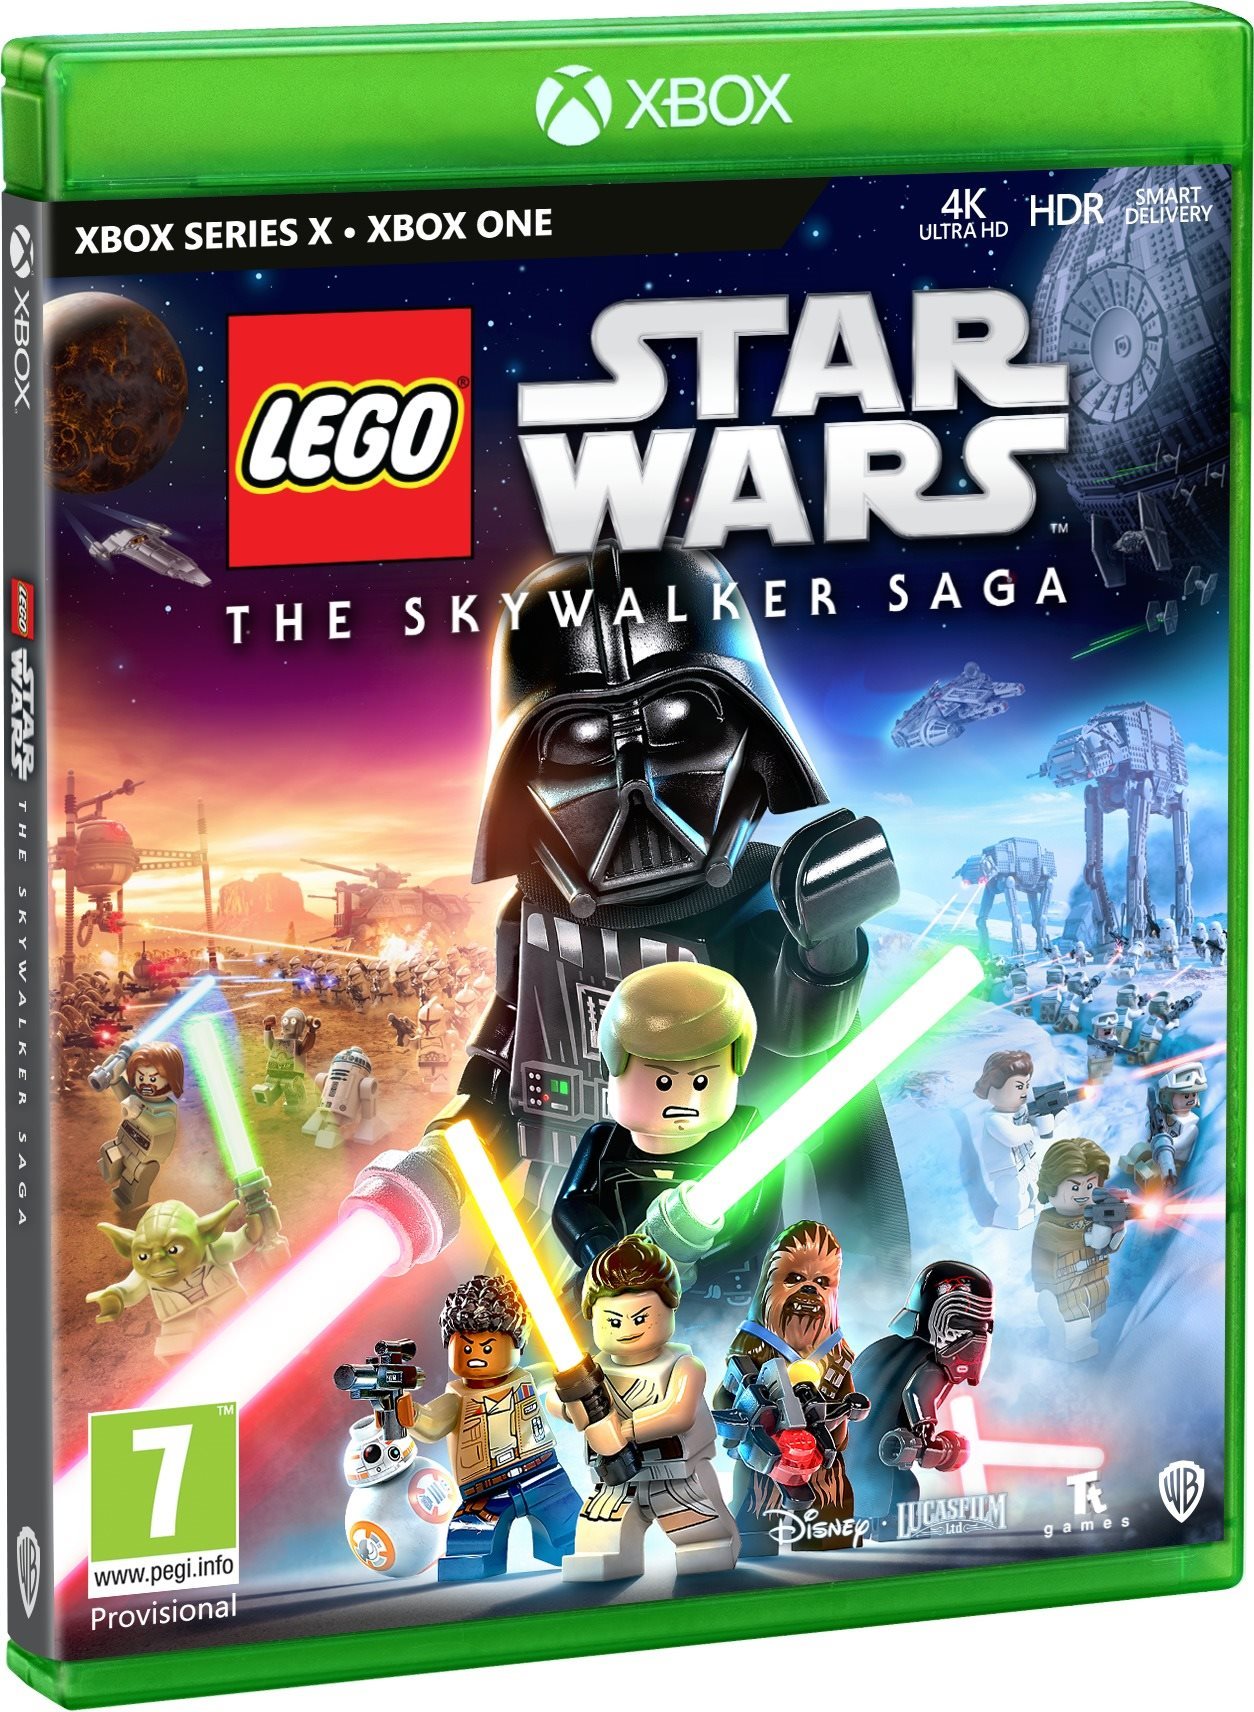 LEGO Star Wars The Skywalker Saga - Xbox One